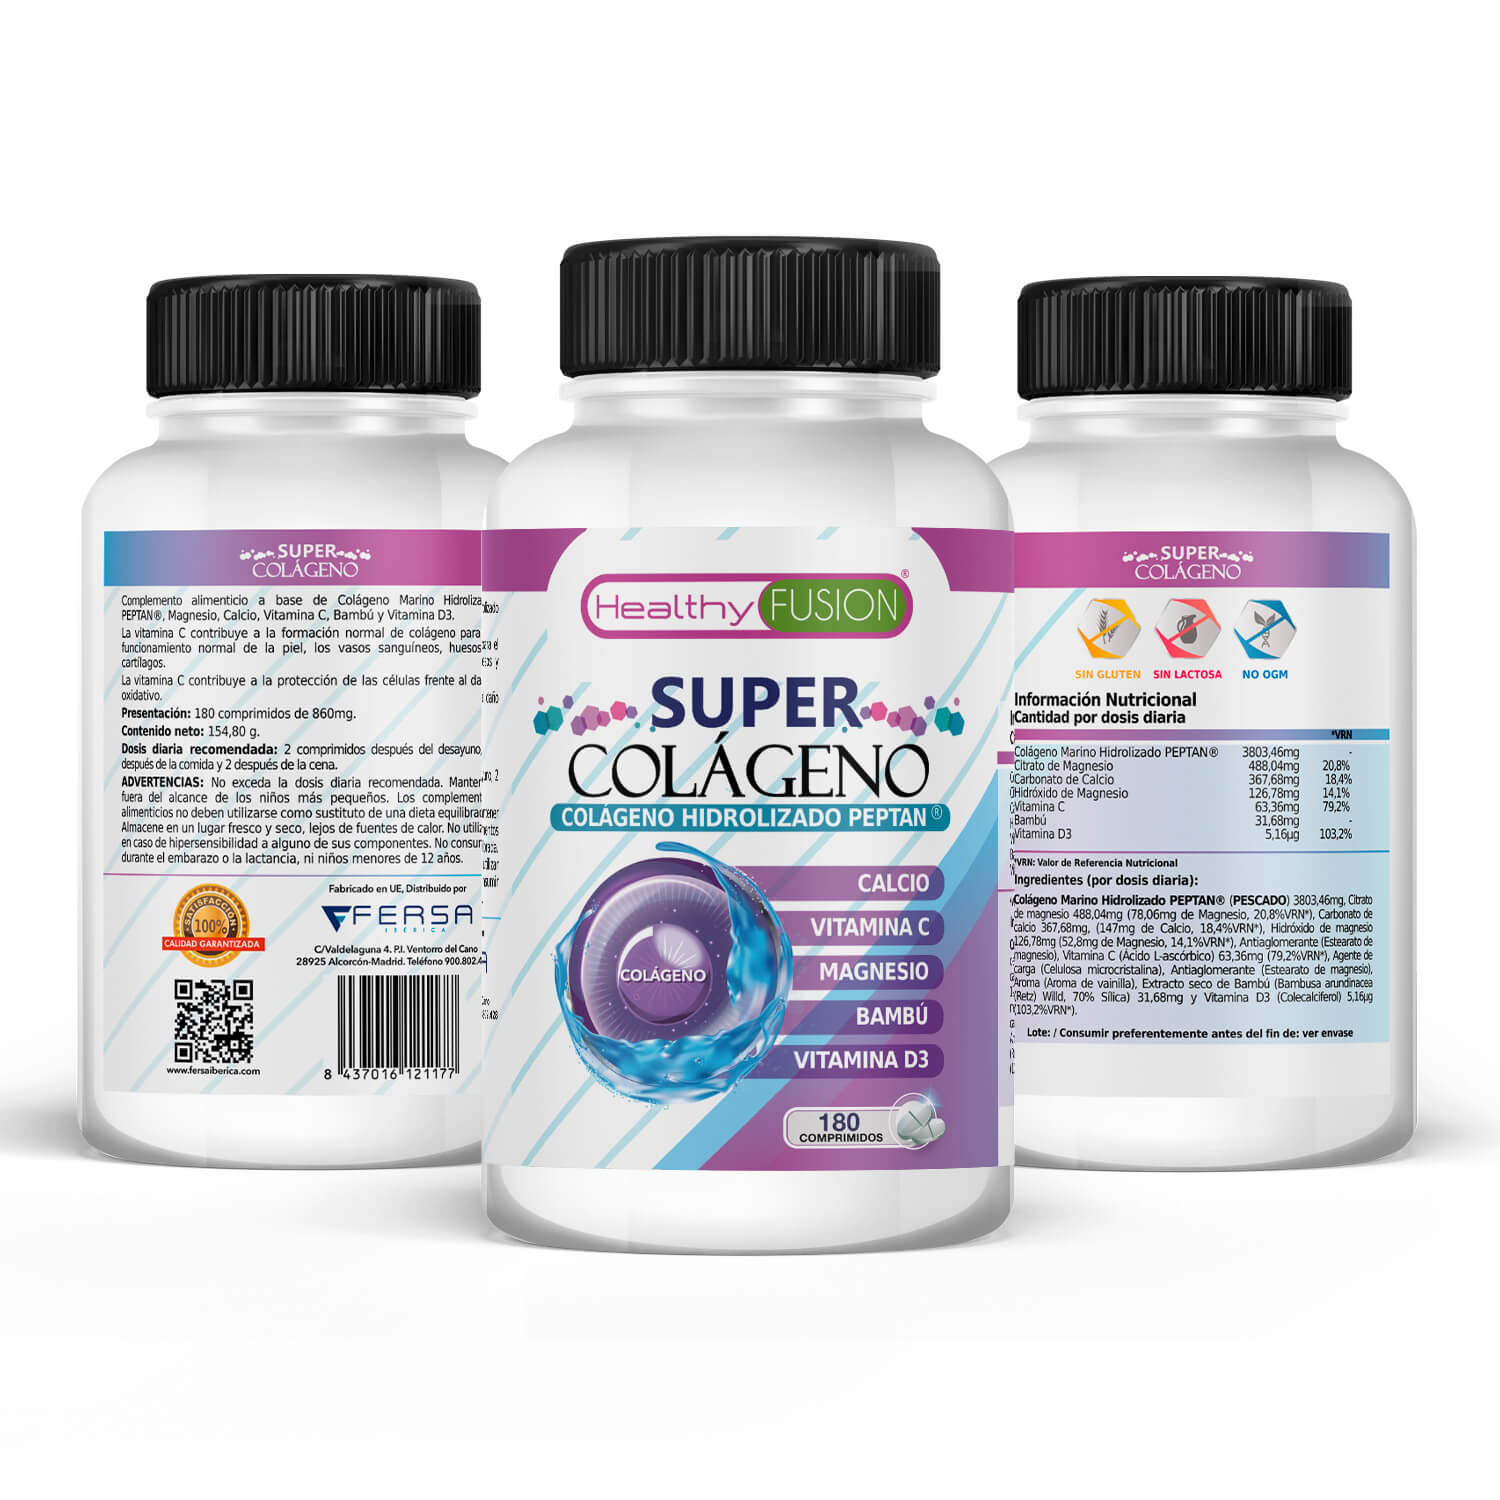 Healthy Fusion - Super Colágeno contenido